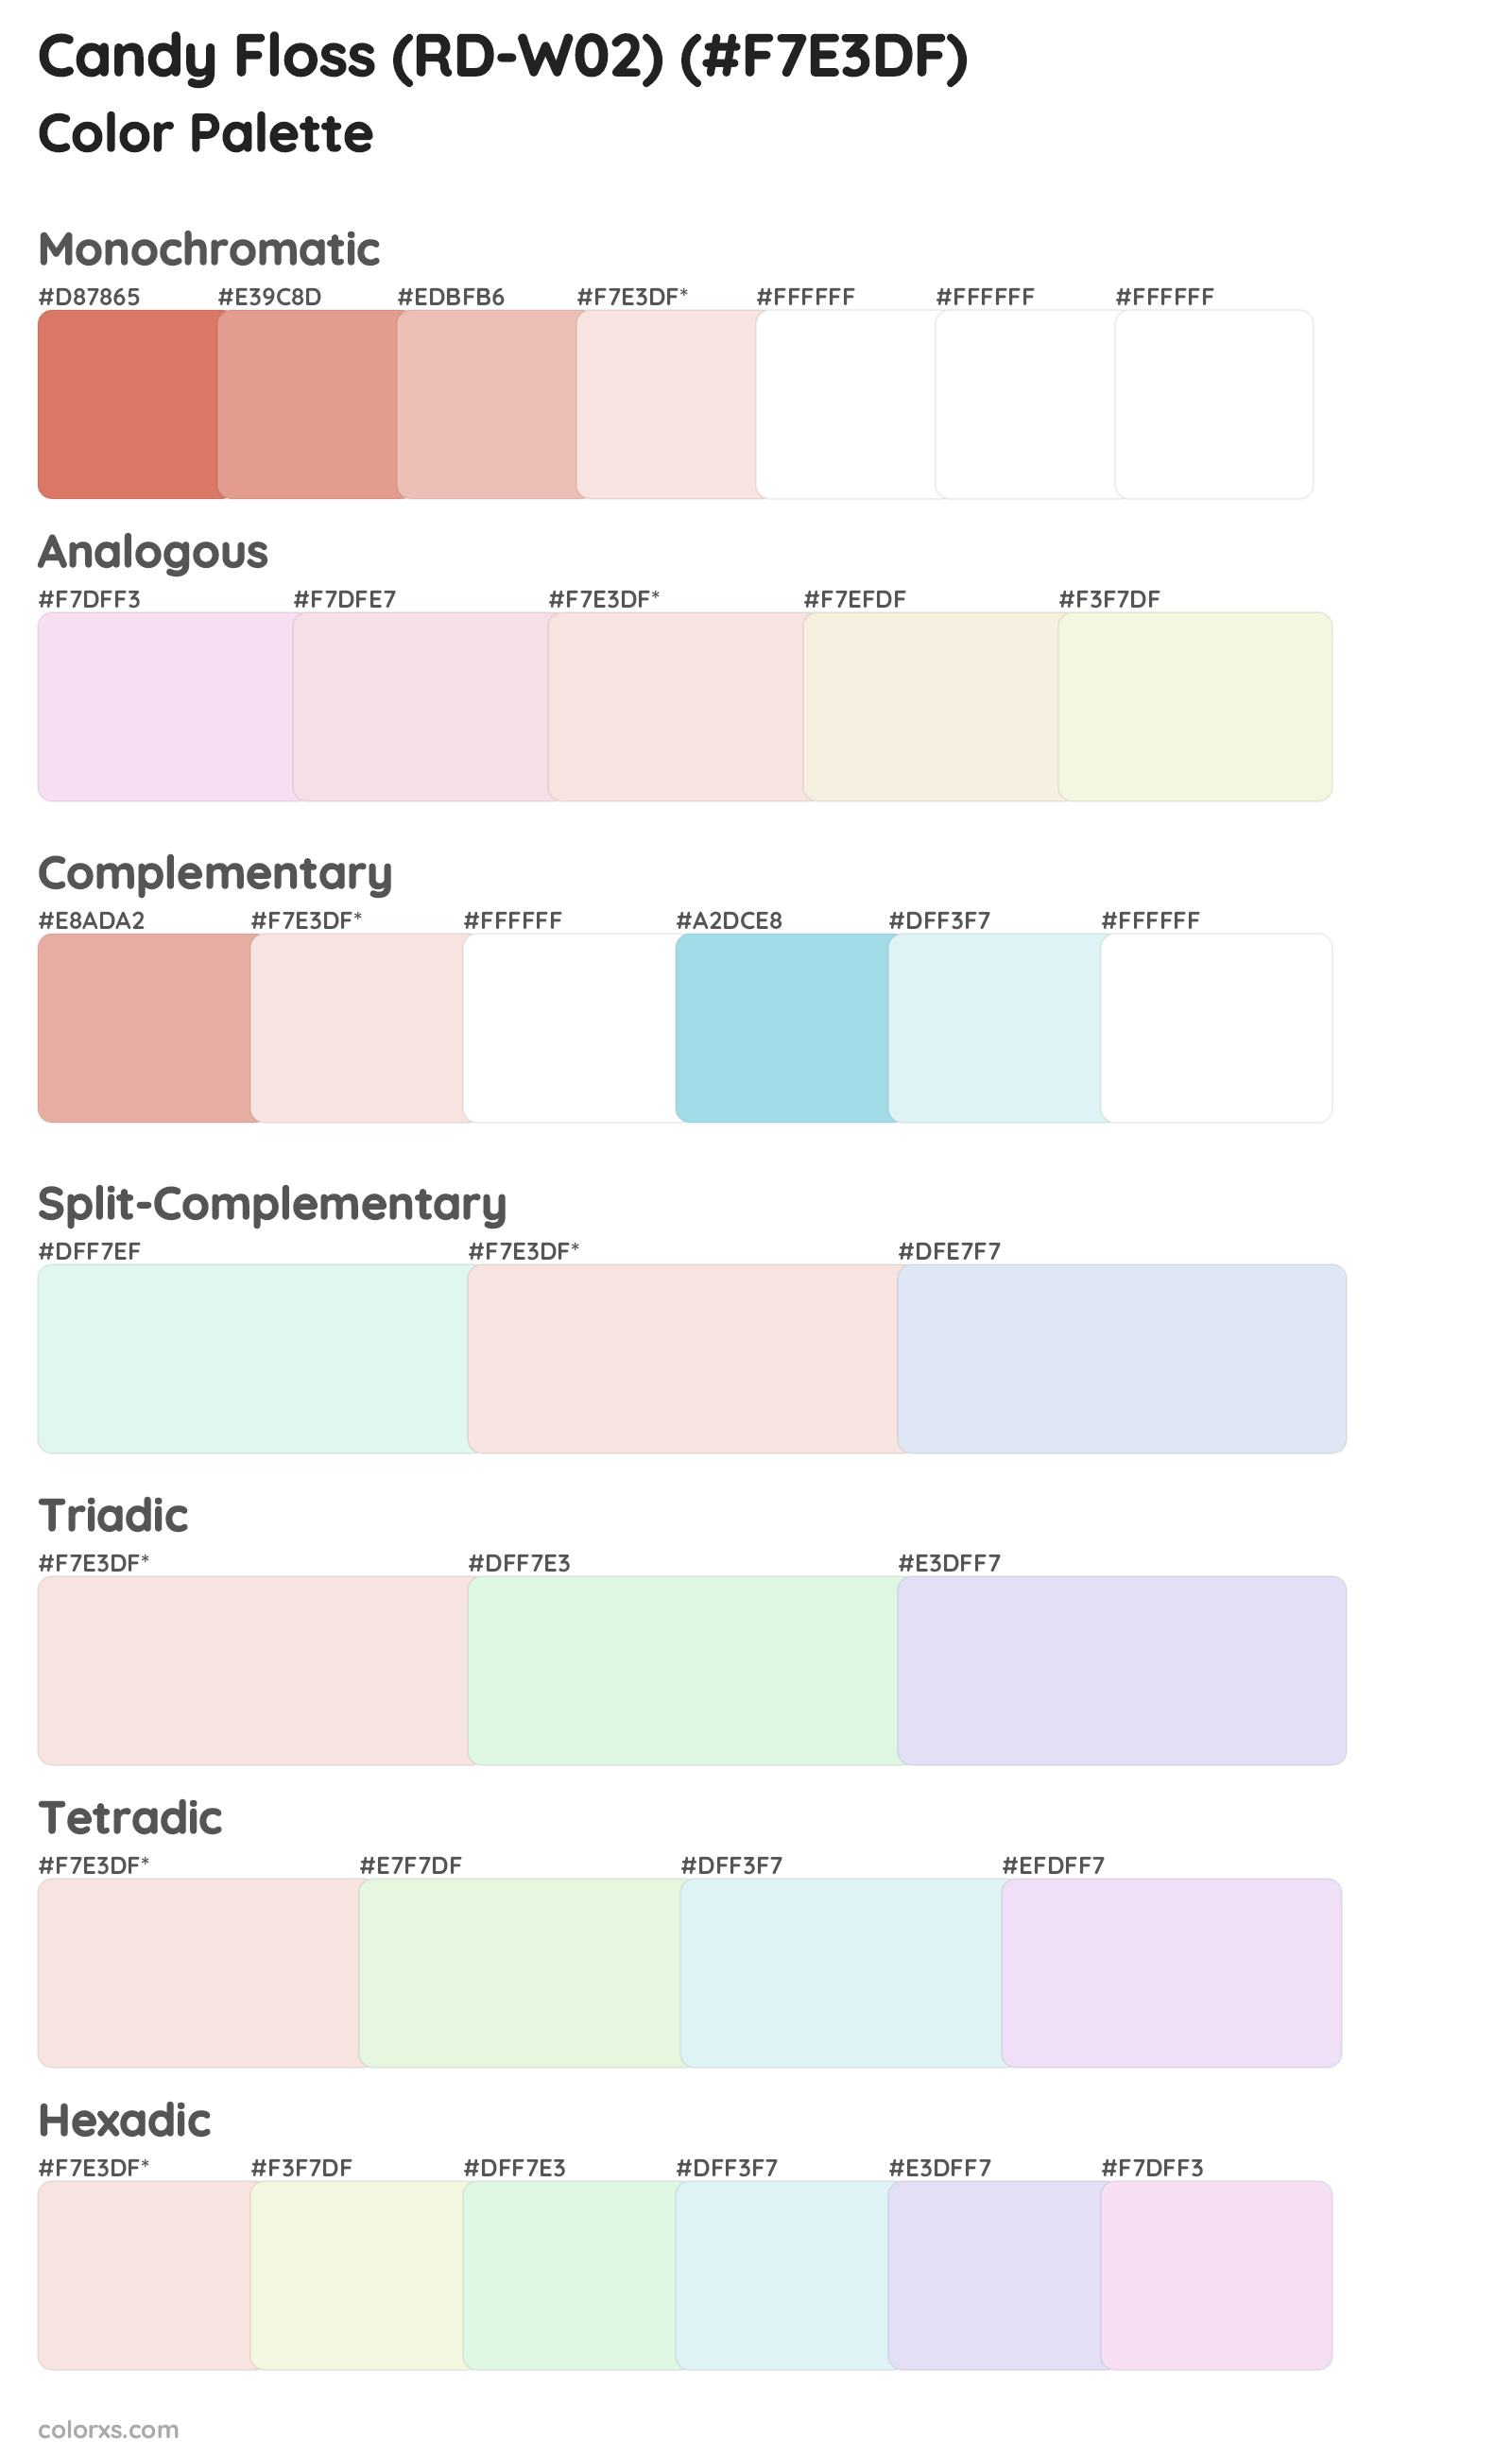 Candy Floss (RD-W02) Color Scheme Palettes